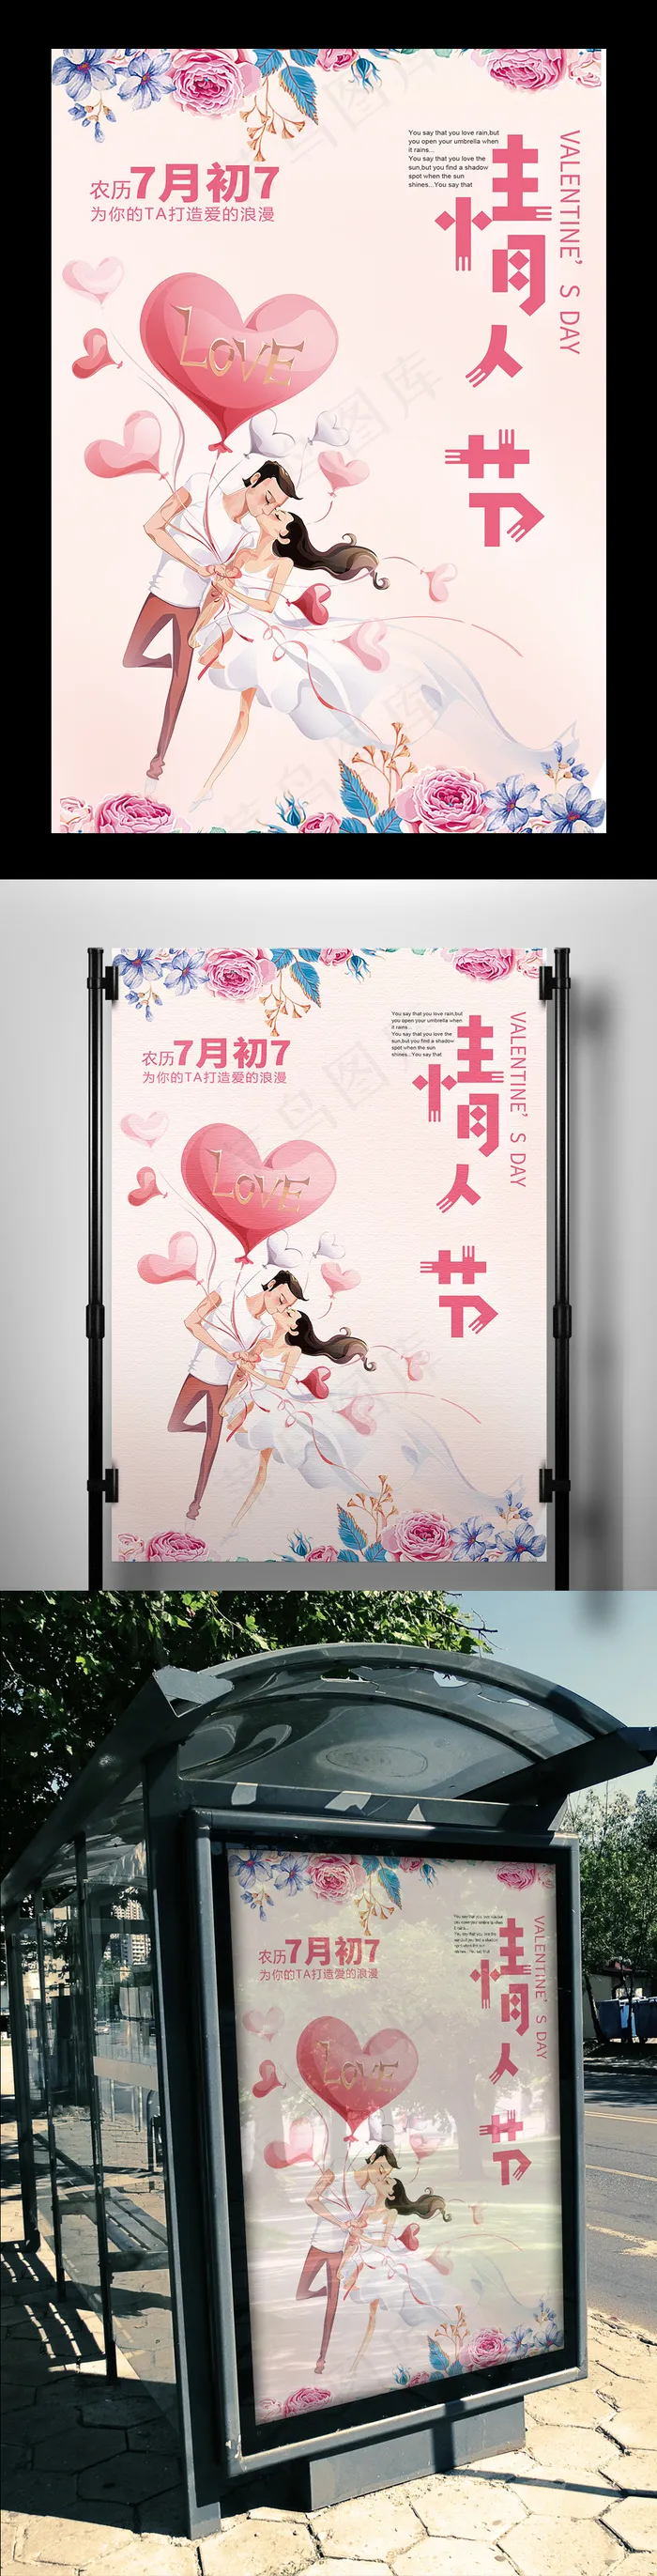 2017年中国情人节七夕粉色海报